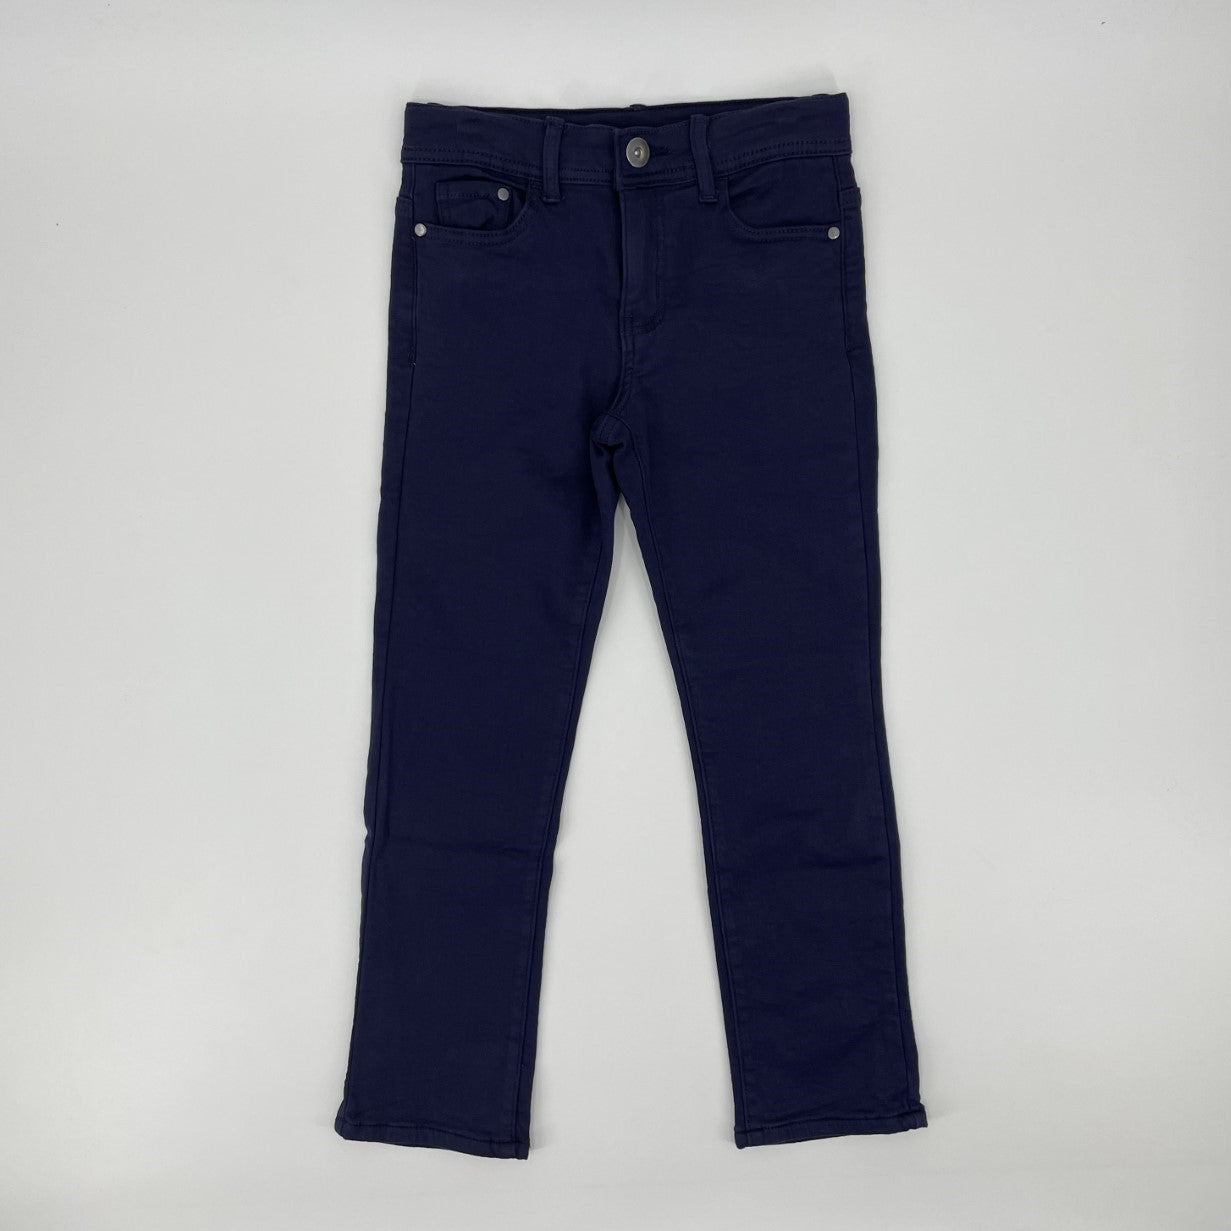 Pantalon pour enfant garçon par Nasri | ZM2014 8 DRESS BLUE | Boutique Flos, vêtements mode pour bébés et enfants